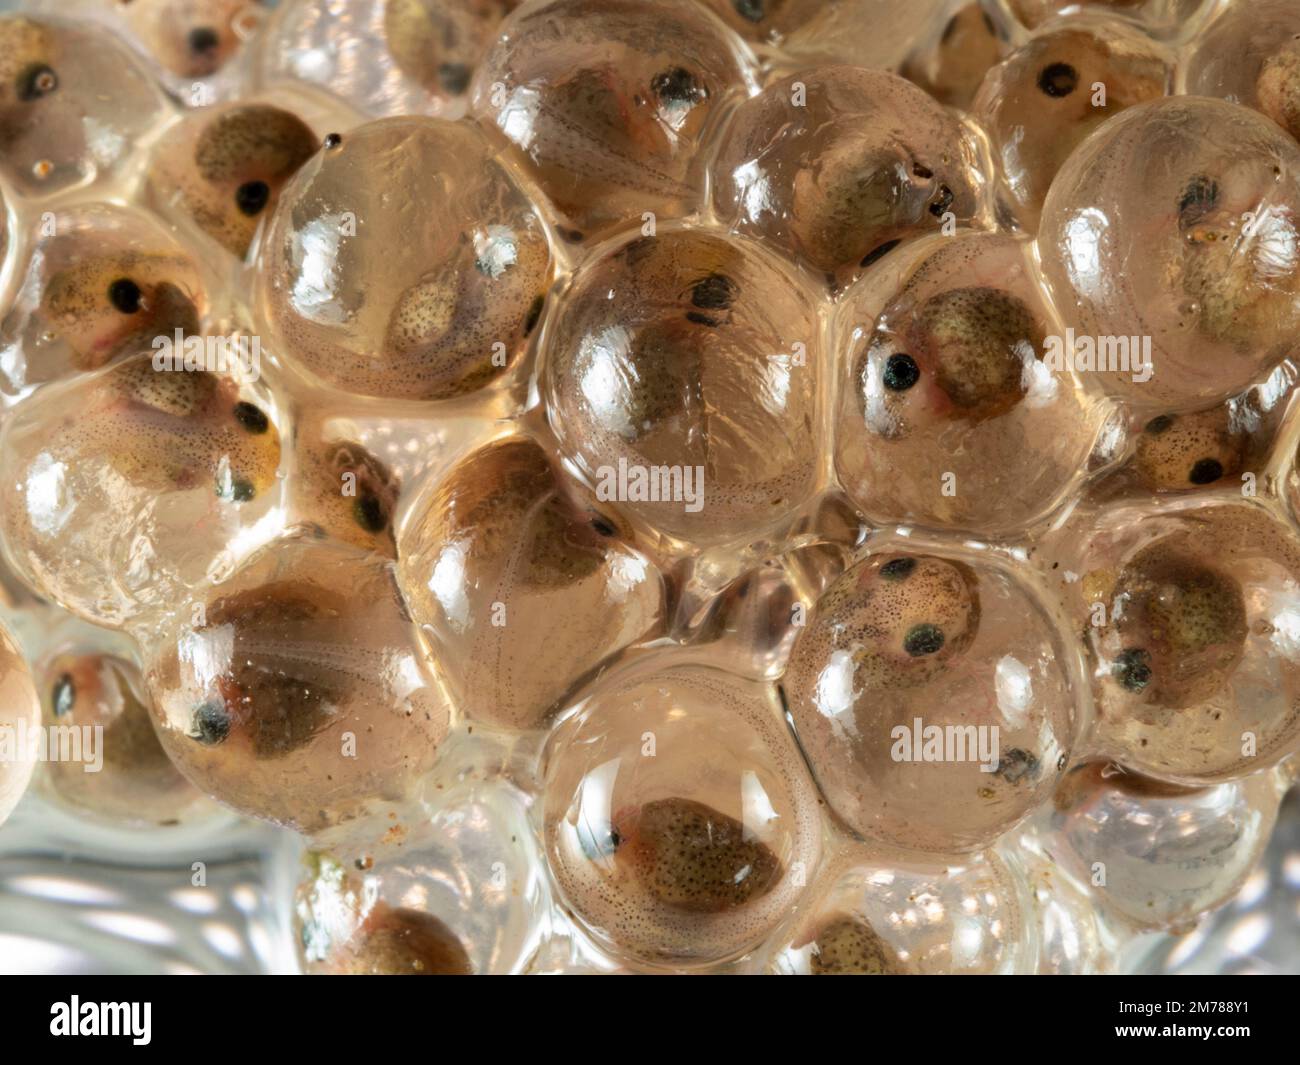 Frizione di uova della rana delle scimmie amazzoniche (Agalychnis hulli), provincia di Orellana, Ecuador Foto Stock